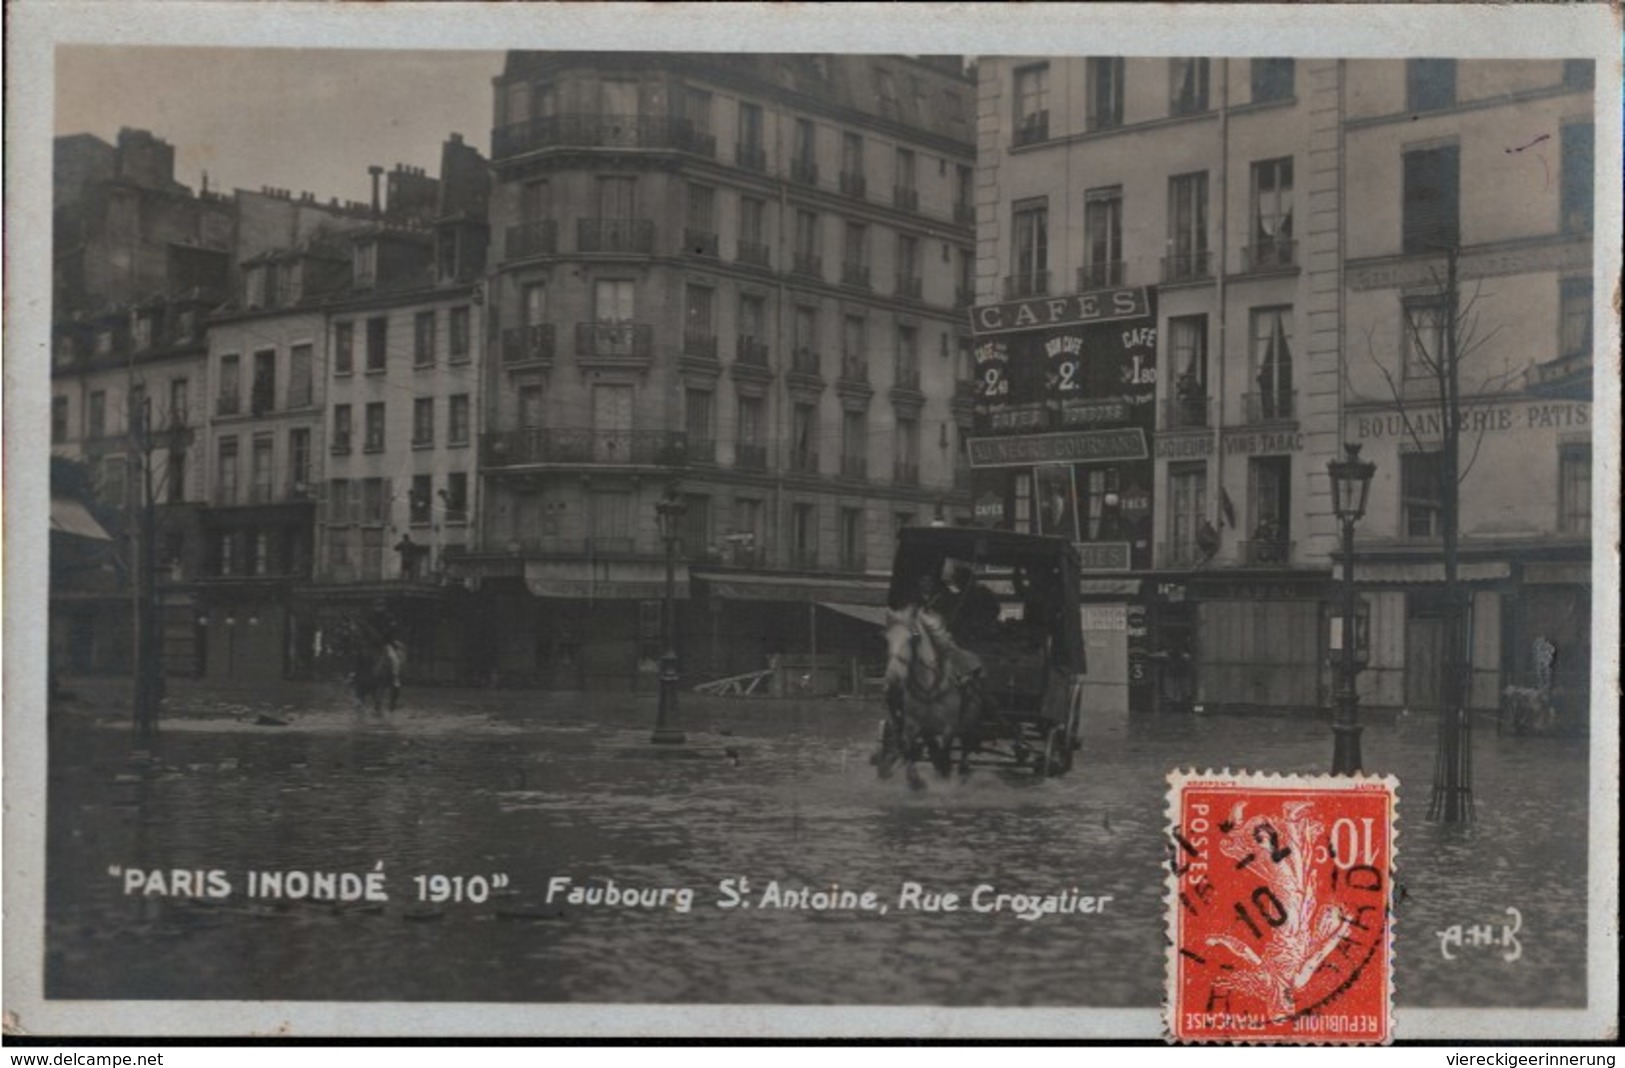 ! Cpa Paris Inonde 1910, Faubourg St. Antoine, Rue Crozatier, Kutsche, Cafe, Überschwemmung - Paris (11)